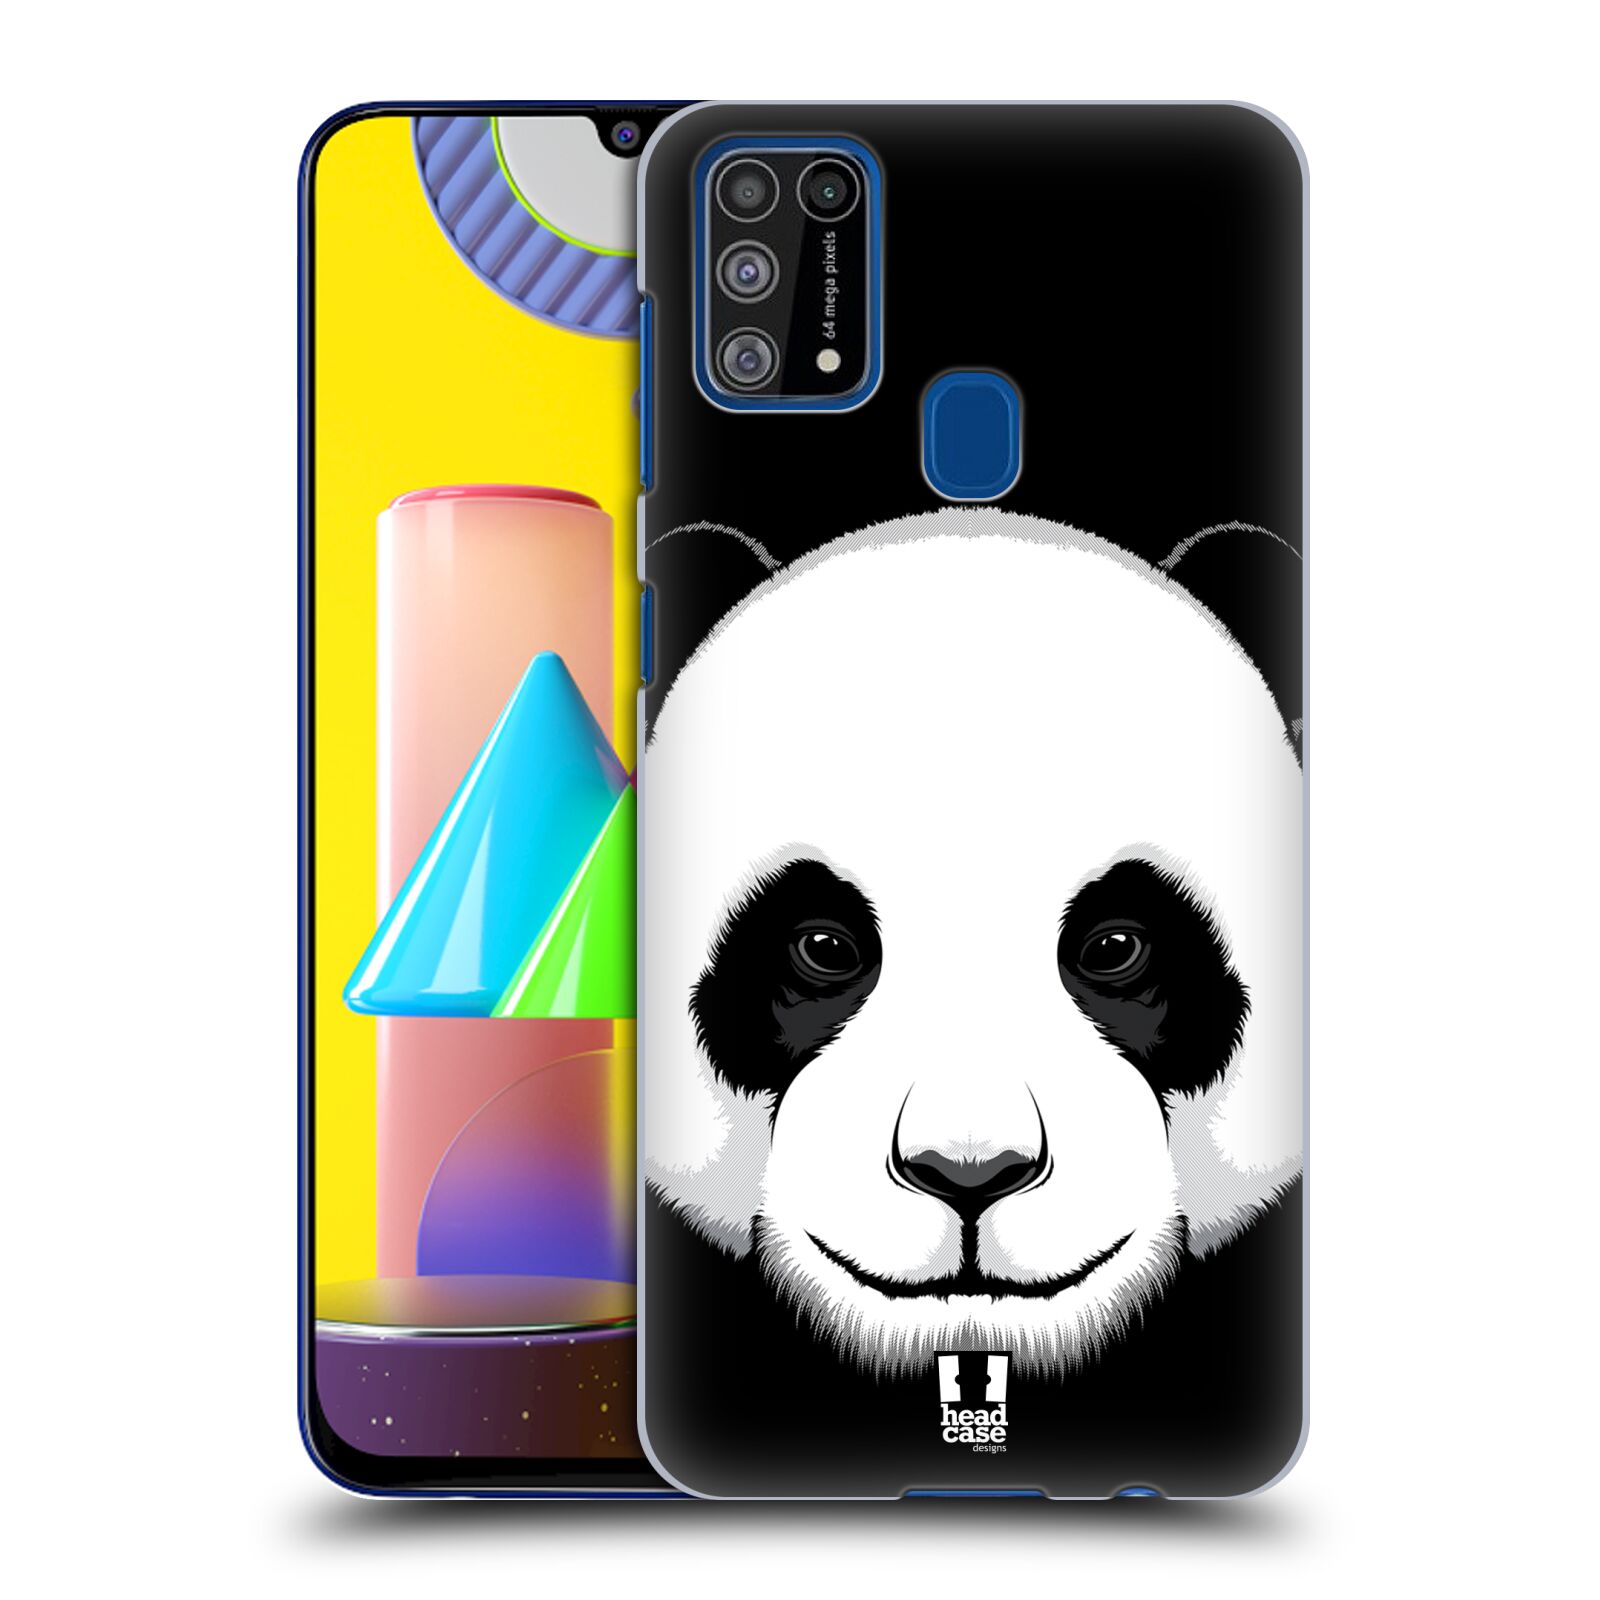 Plastový obal HEAD CASE na mobil Samsung Galaxy M31 vzor Zvíře kreslená tvář panda